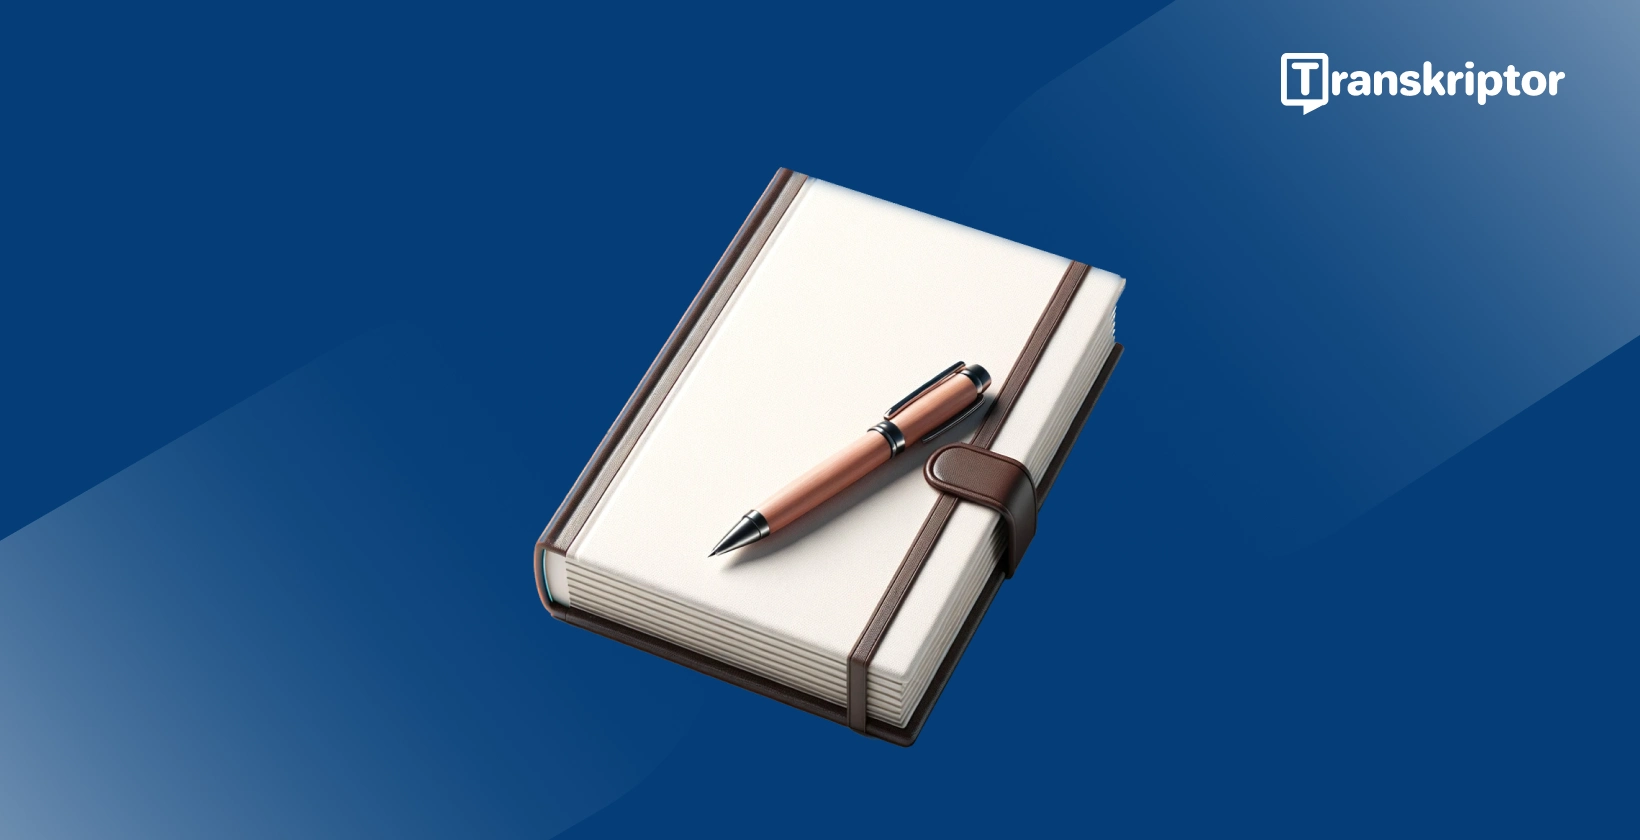 Oprogramowanie do dyktowania dla pisarzy, pokazujące notatnik i długopis, symbolizujące narzędzia do pisania.